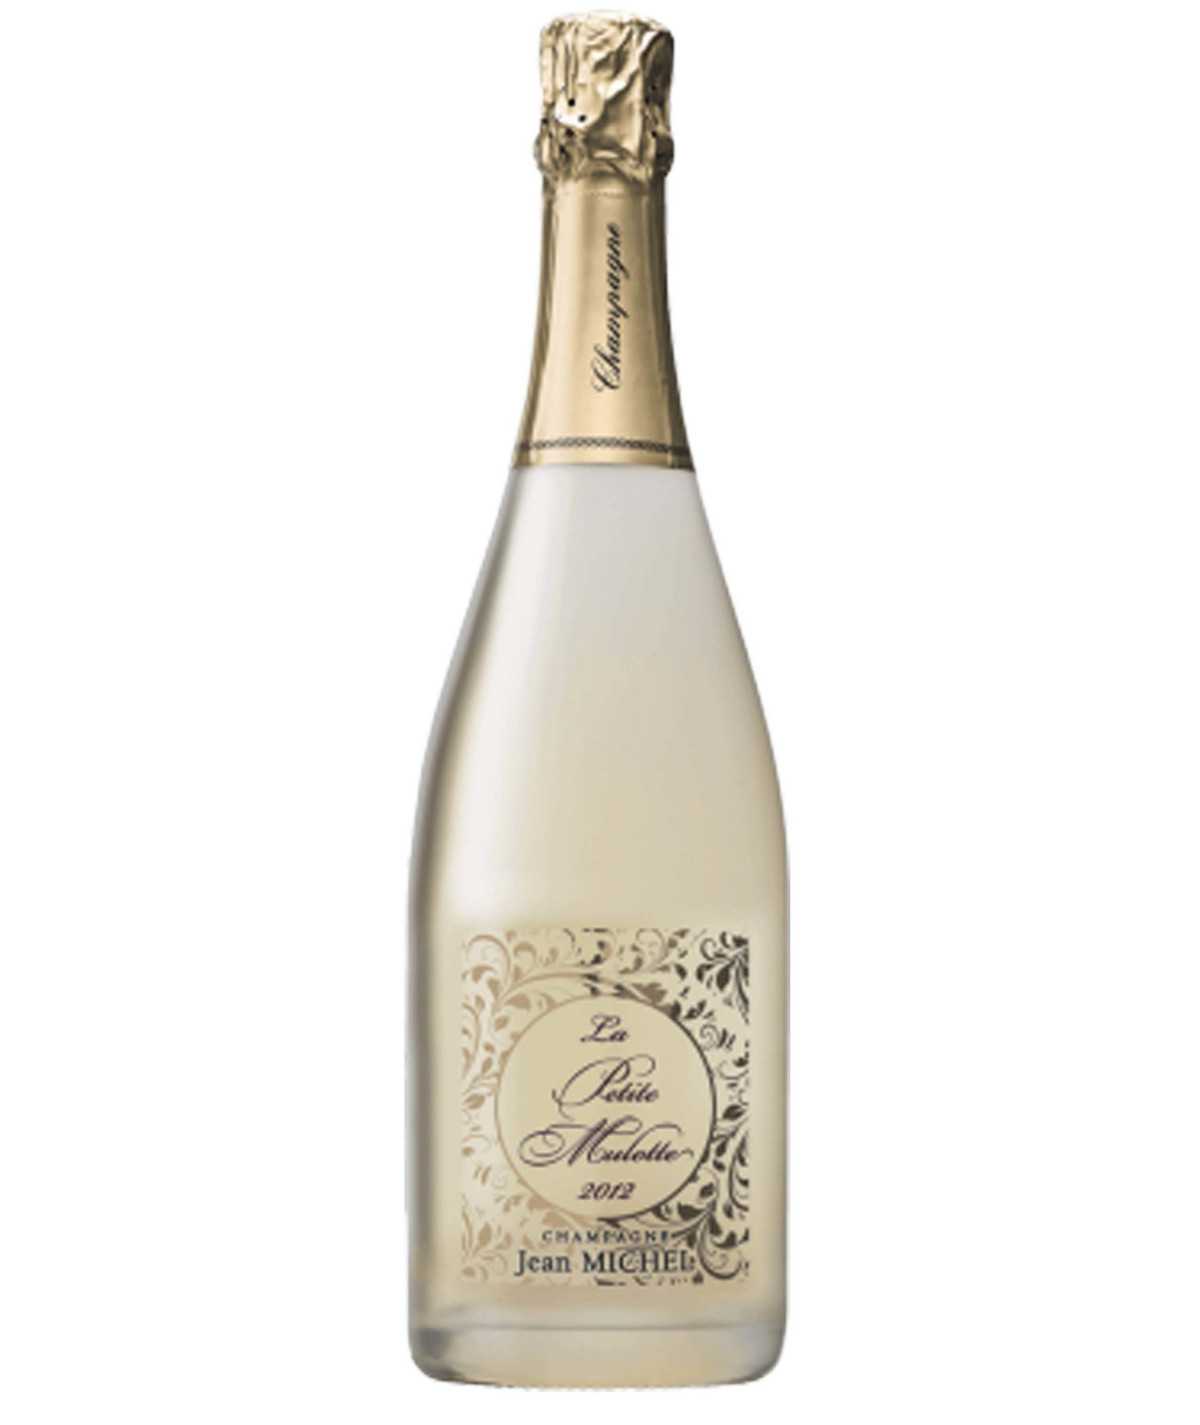 Image de la bouteille de Champagne JEAN MICHEL La Petite Mulotte Blanc De Blancs, symbole de raffinement et d'excellence.